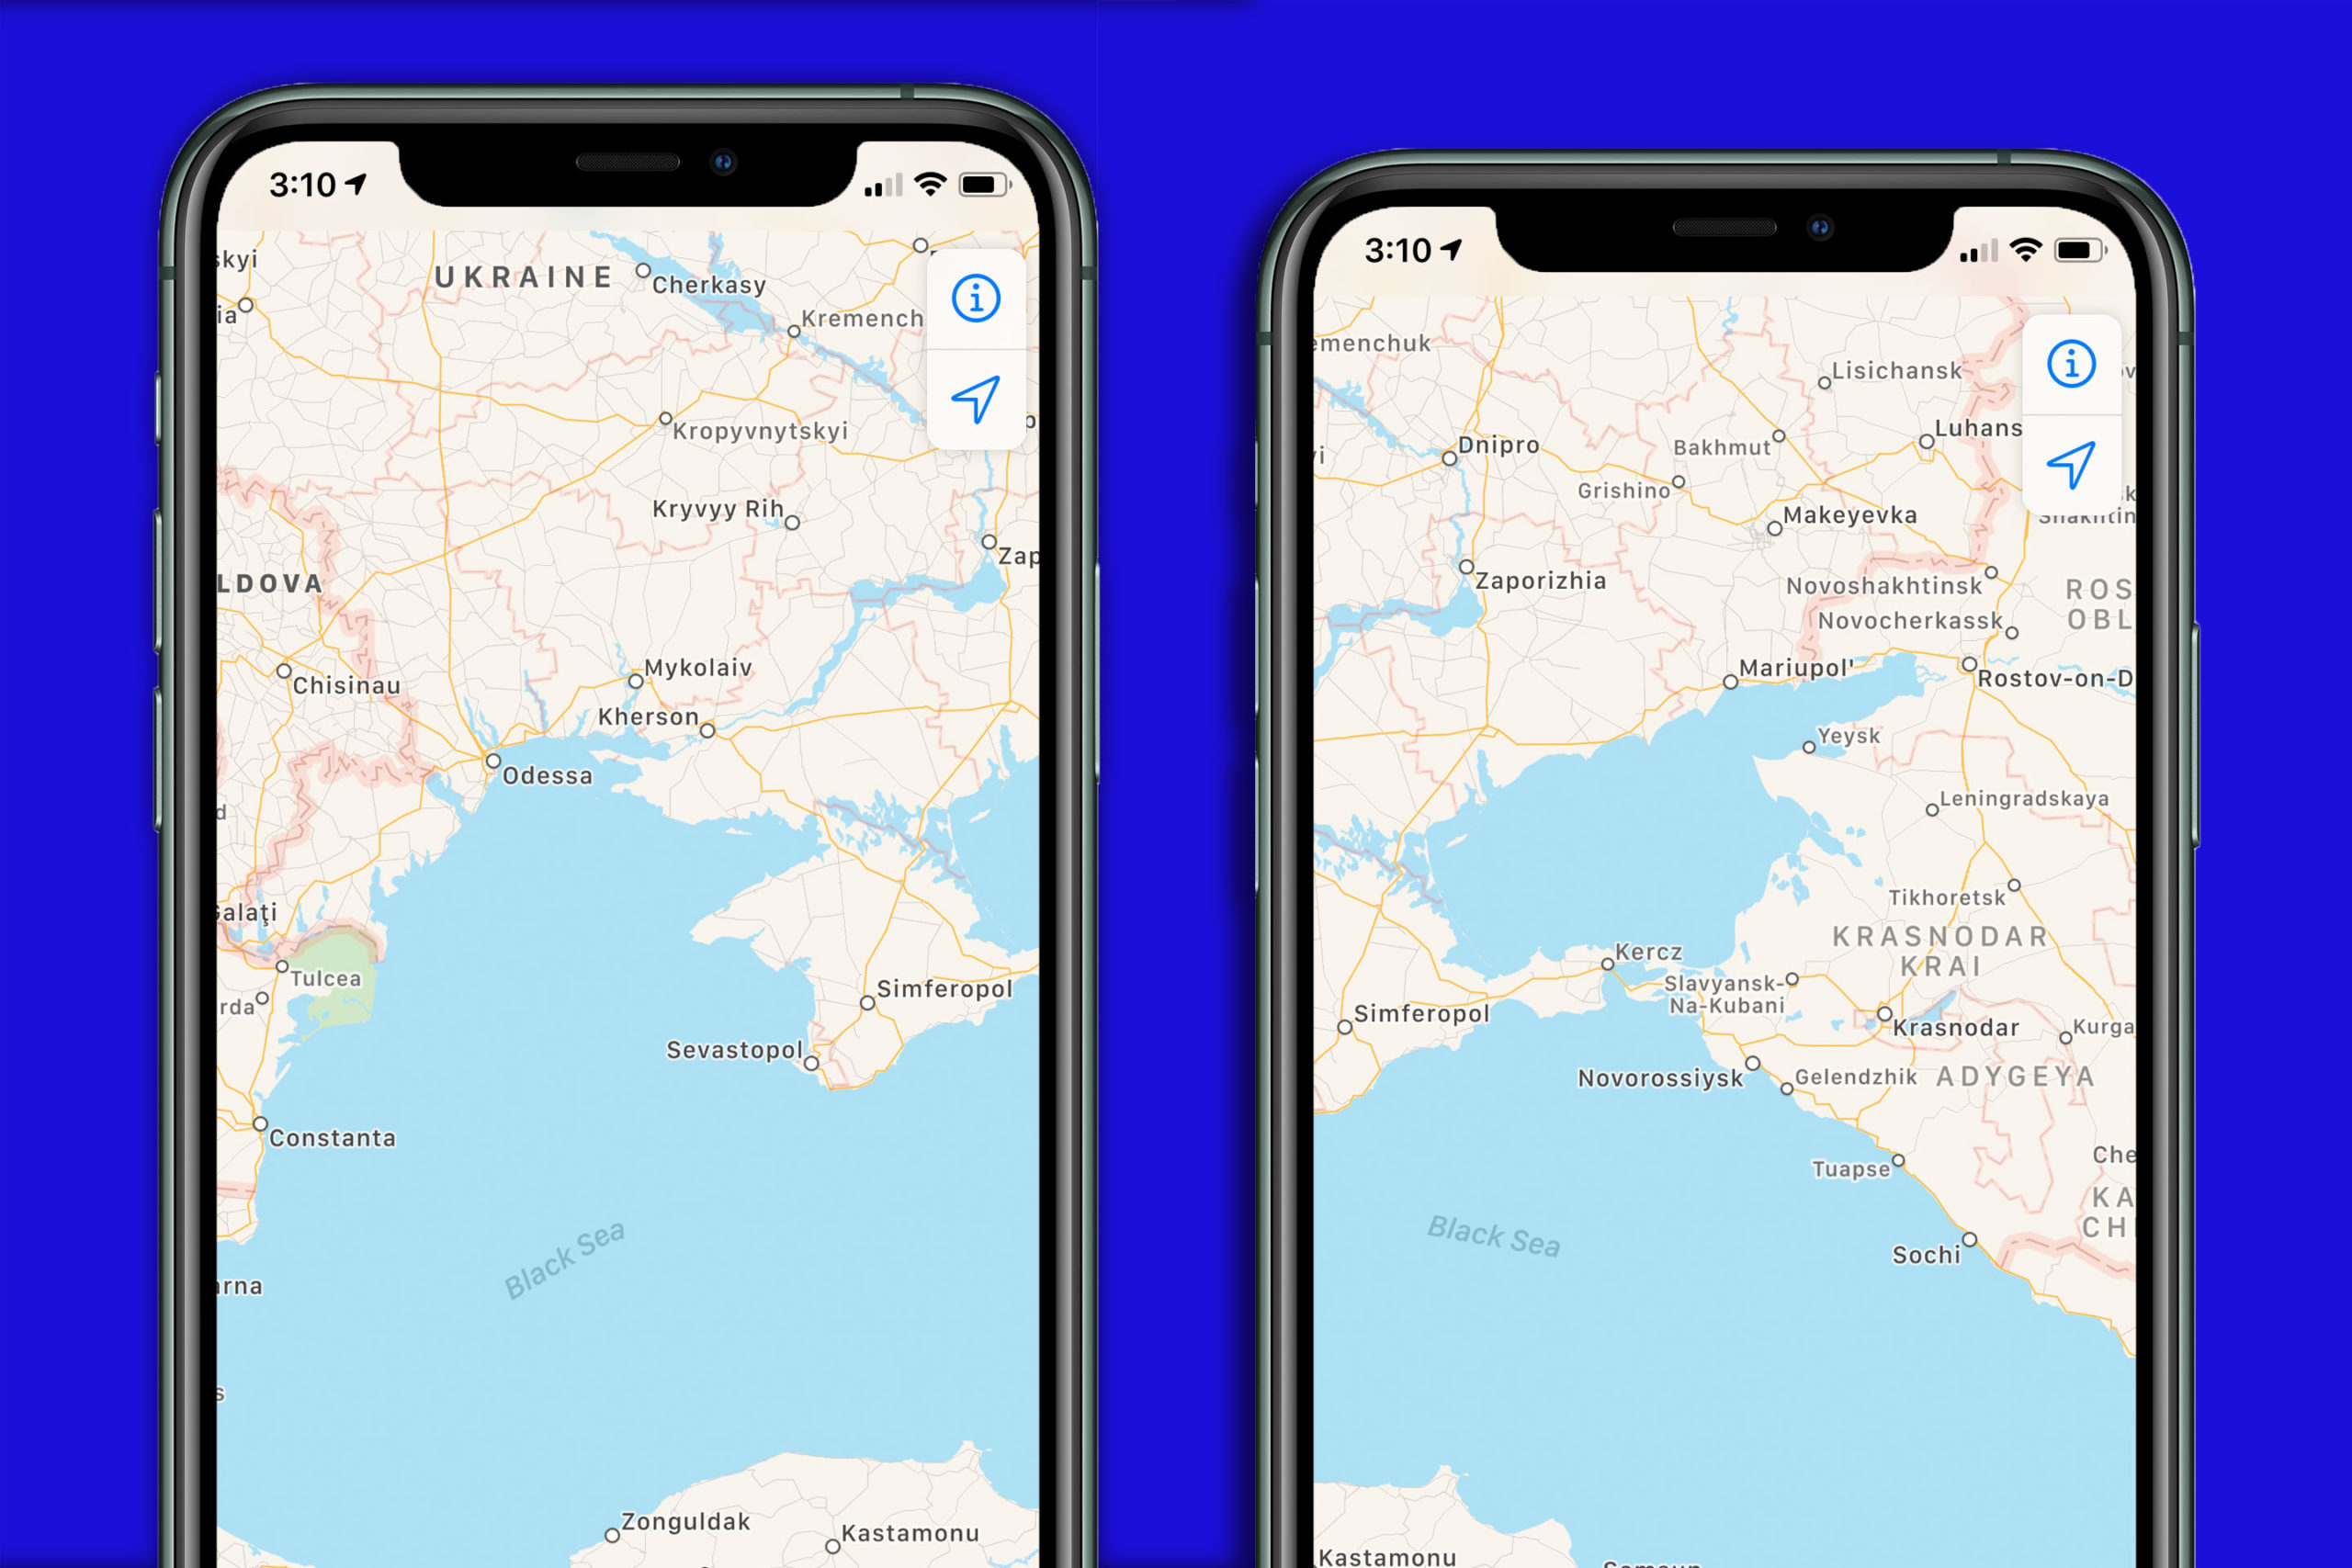 ستعيد Apple تقييم التغييرات على خرائطها بعد الوضع في شبه جزيرة القرم